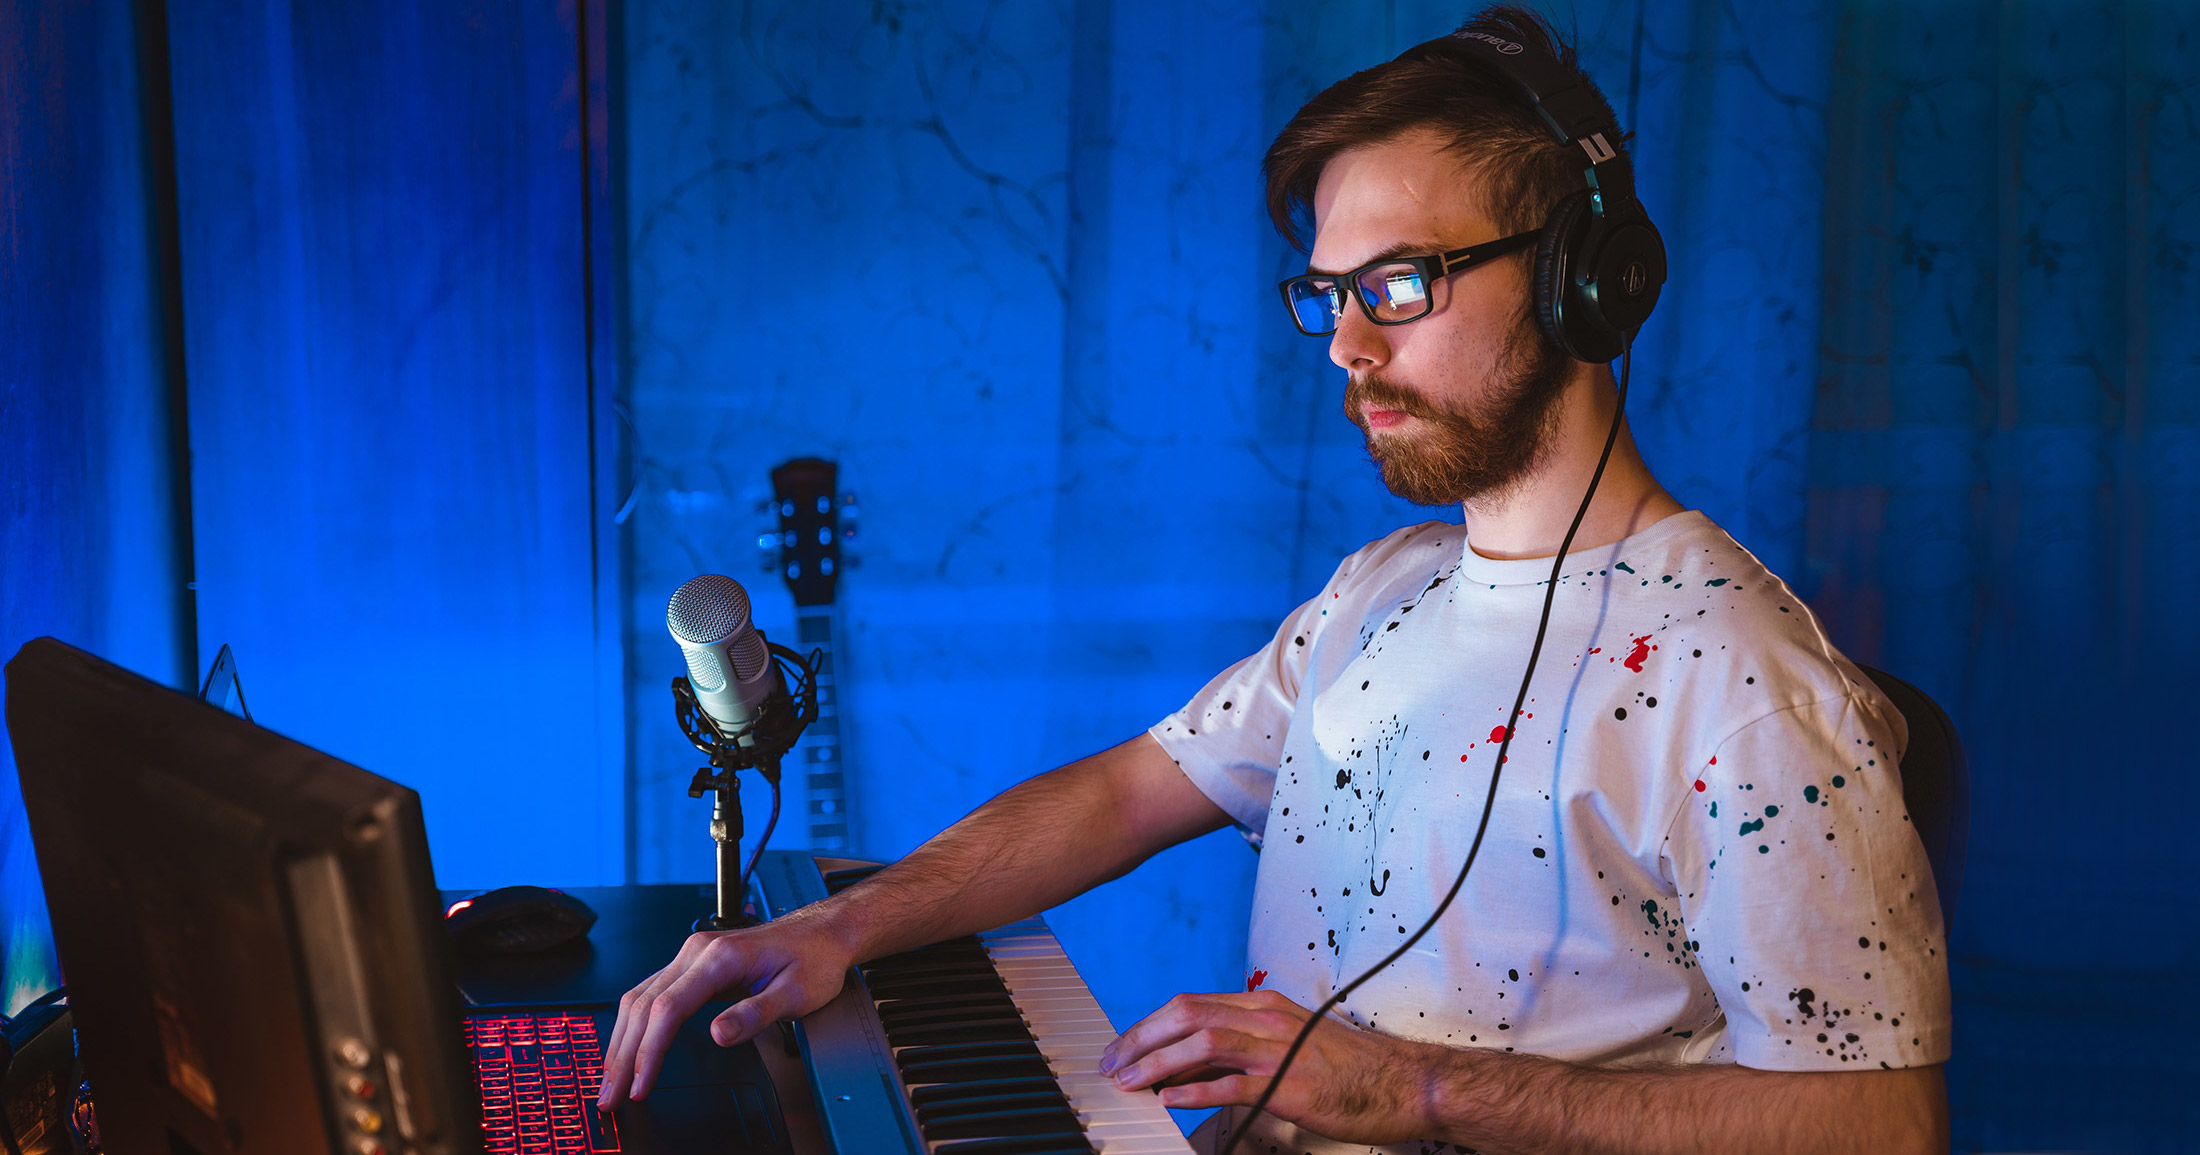 Мужчина в очках деалет семплы с клавишных, сидя на фоне синей шторы